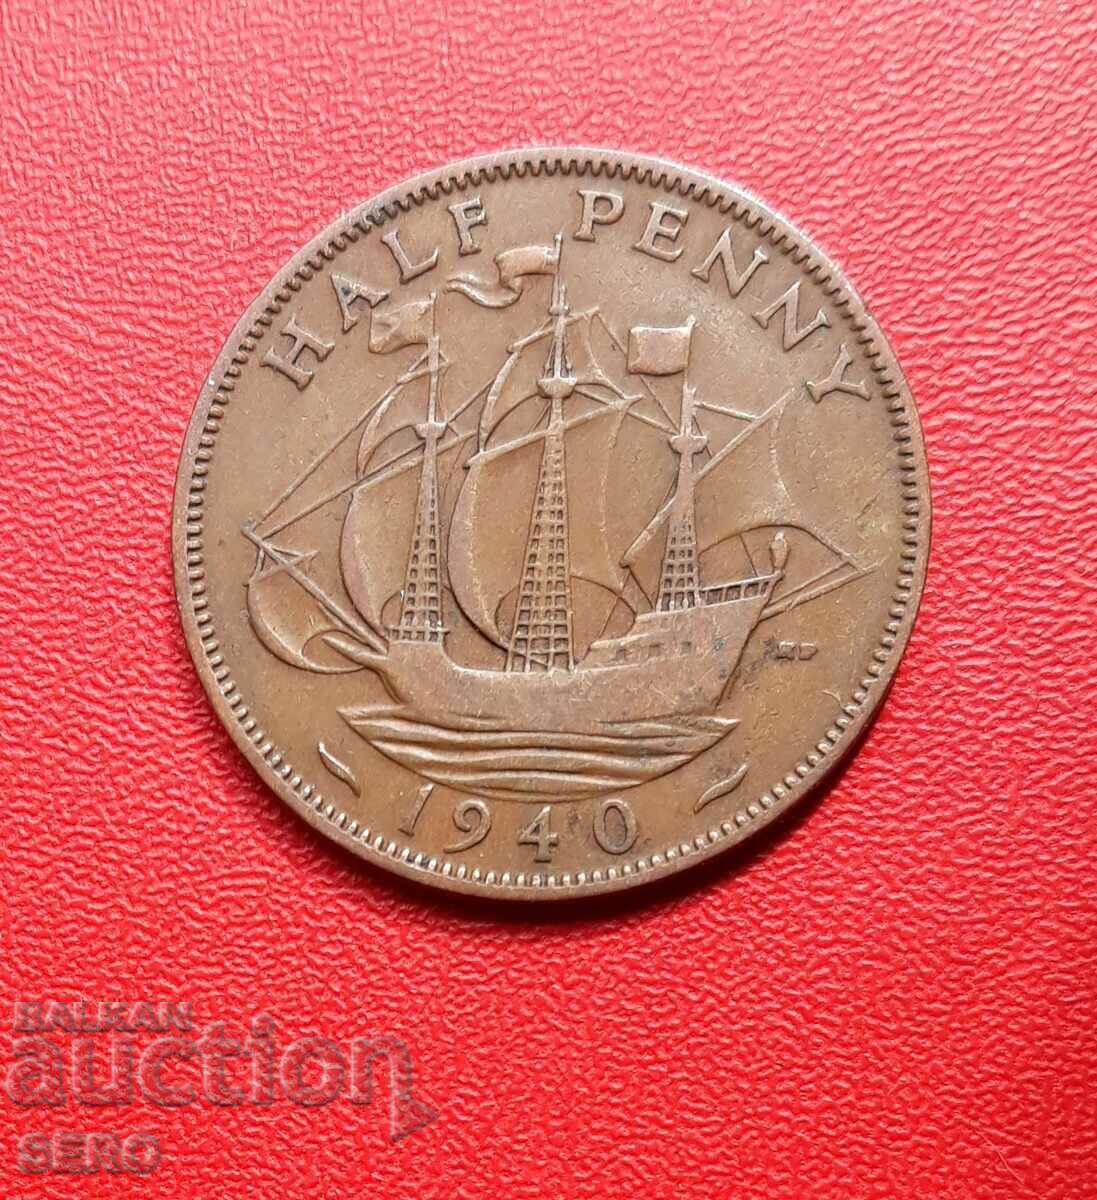 Marea Britanie - 1/2 penny 1940